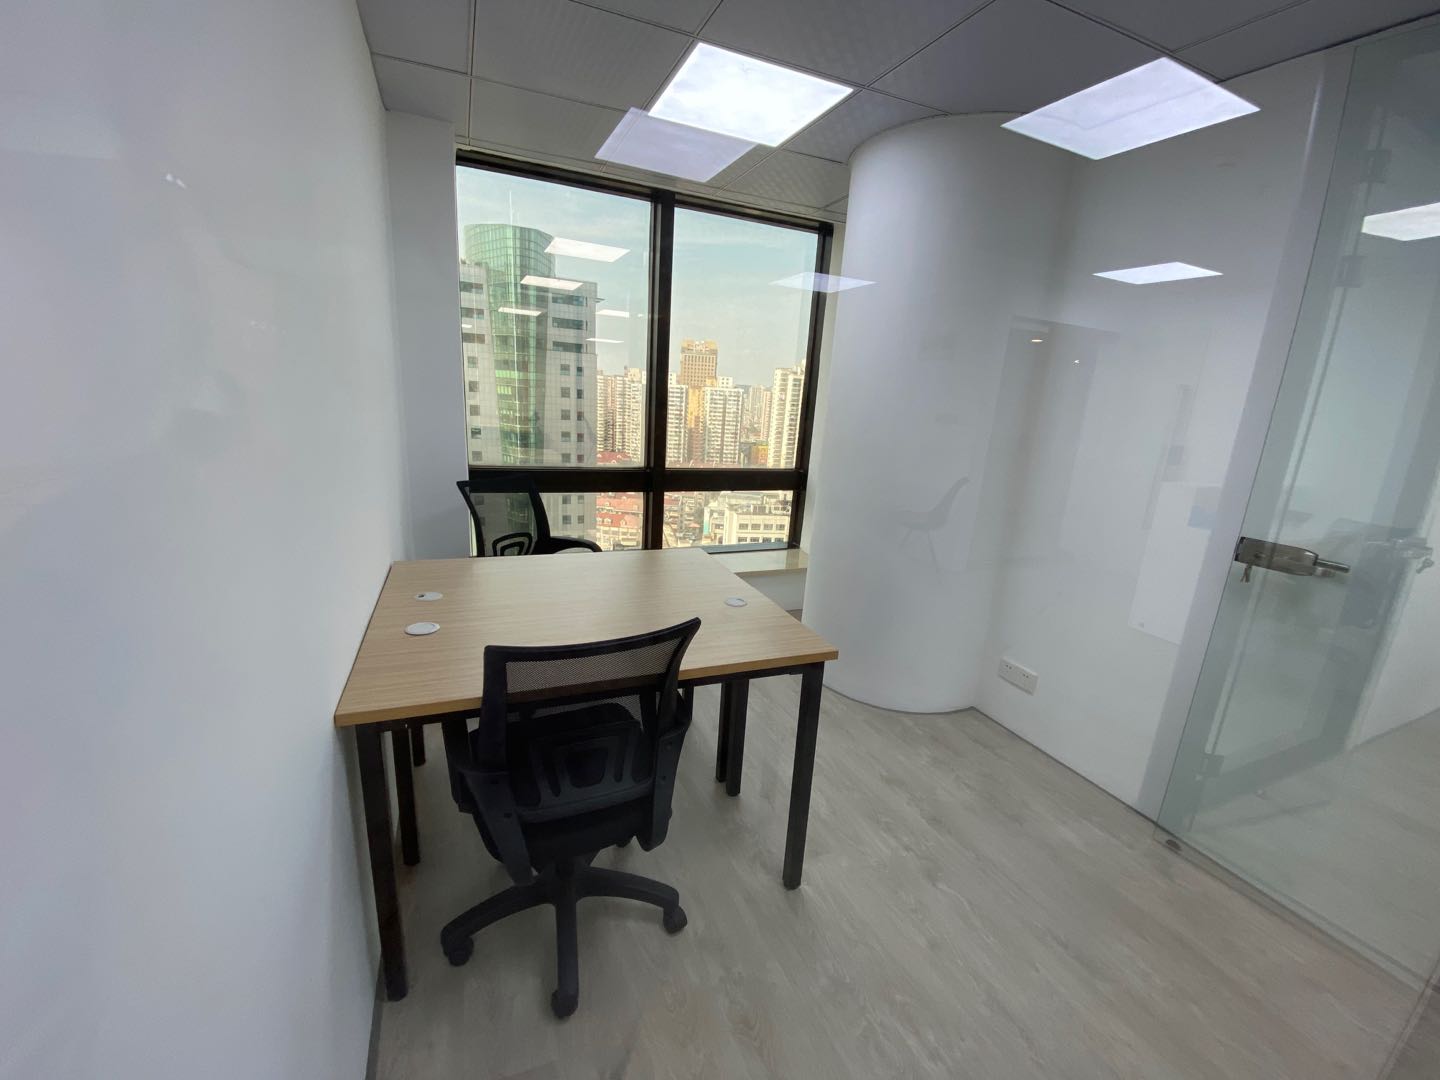 环球世界大厦-静安寺178方特价独立精装全配办公室